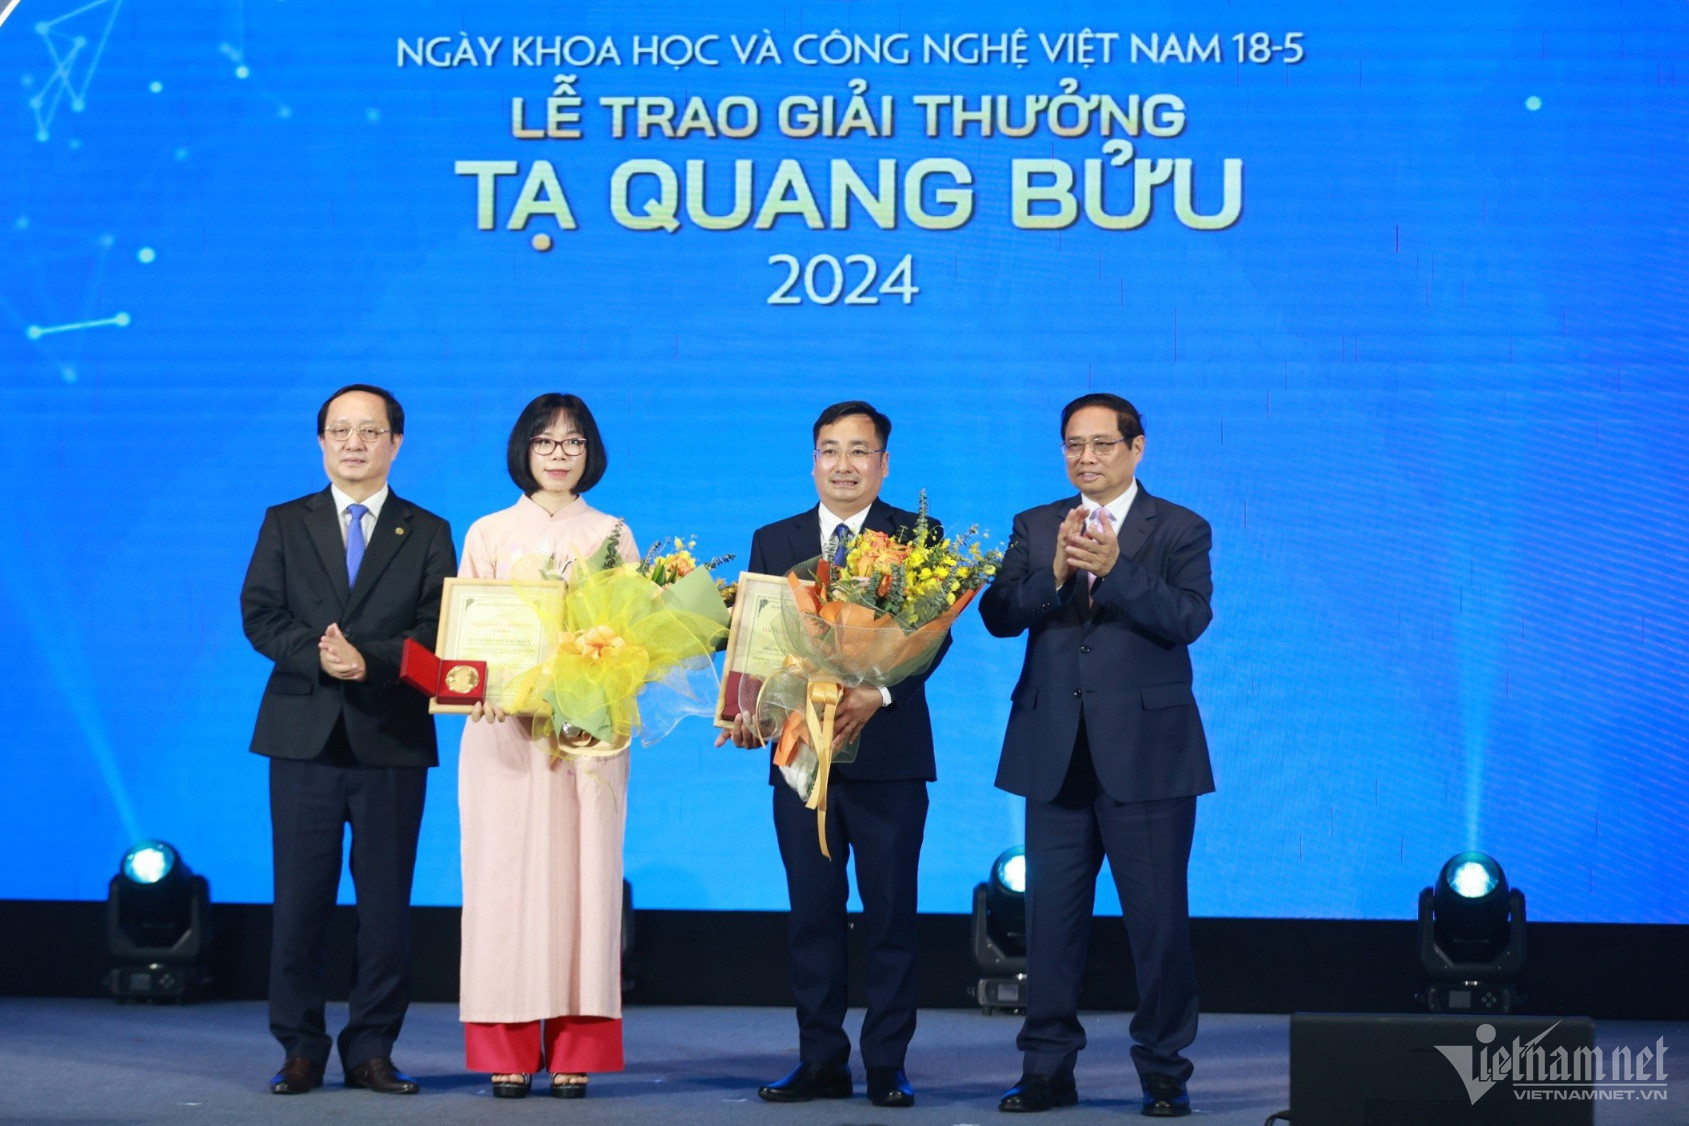 W-Giai thuong Ta Quang Buu 2024.jpg